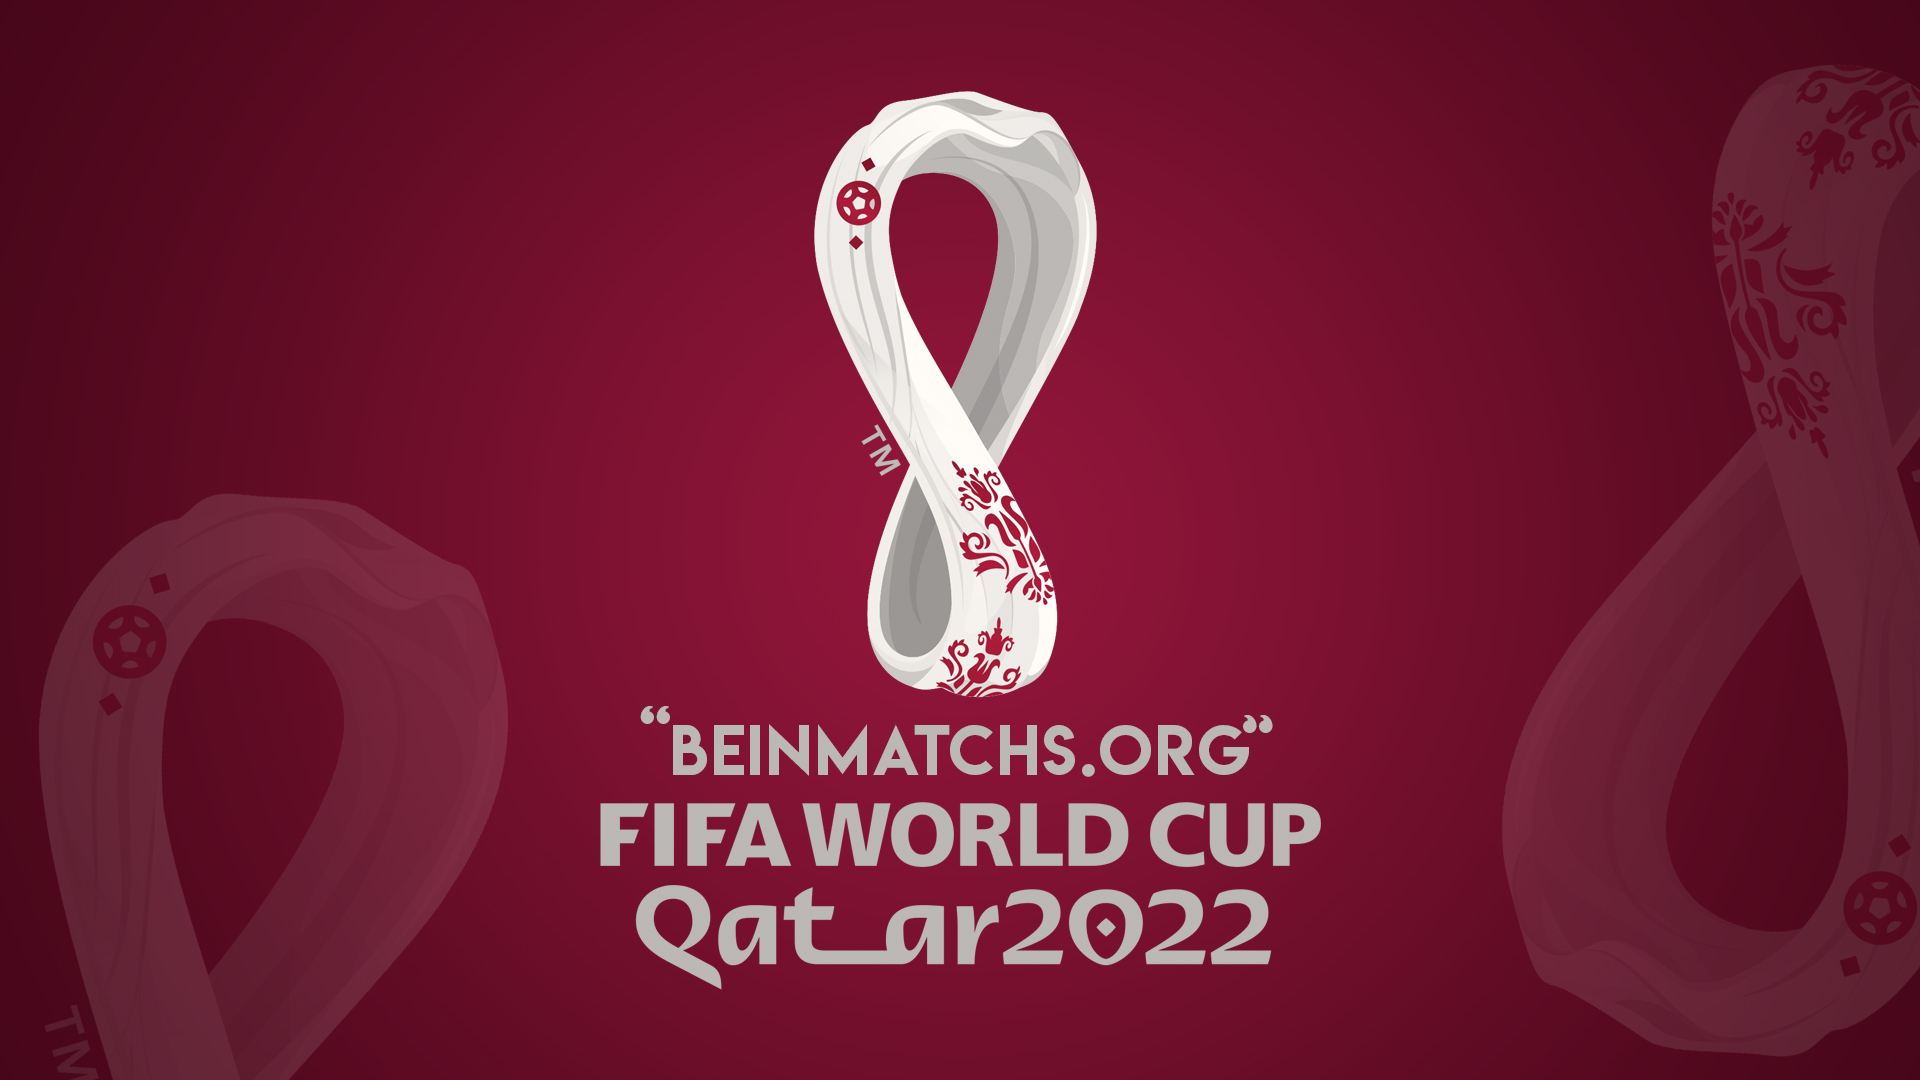 موعد إنطلاق وجدول مجموعات مباريات مونديال كأس العالم فيفا 2022 قطر بين سبورت – world cup qatar 2022 fifa